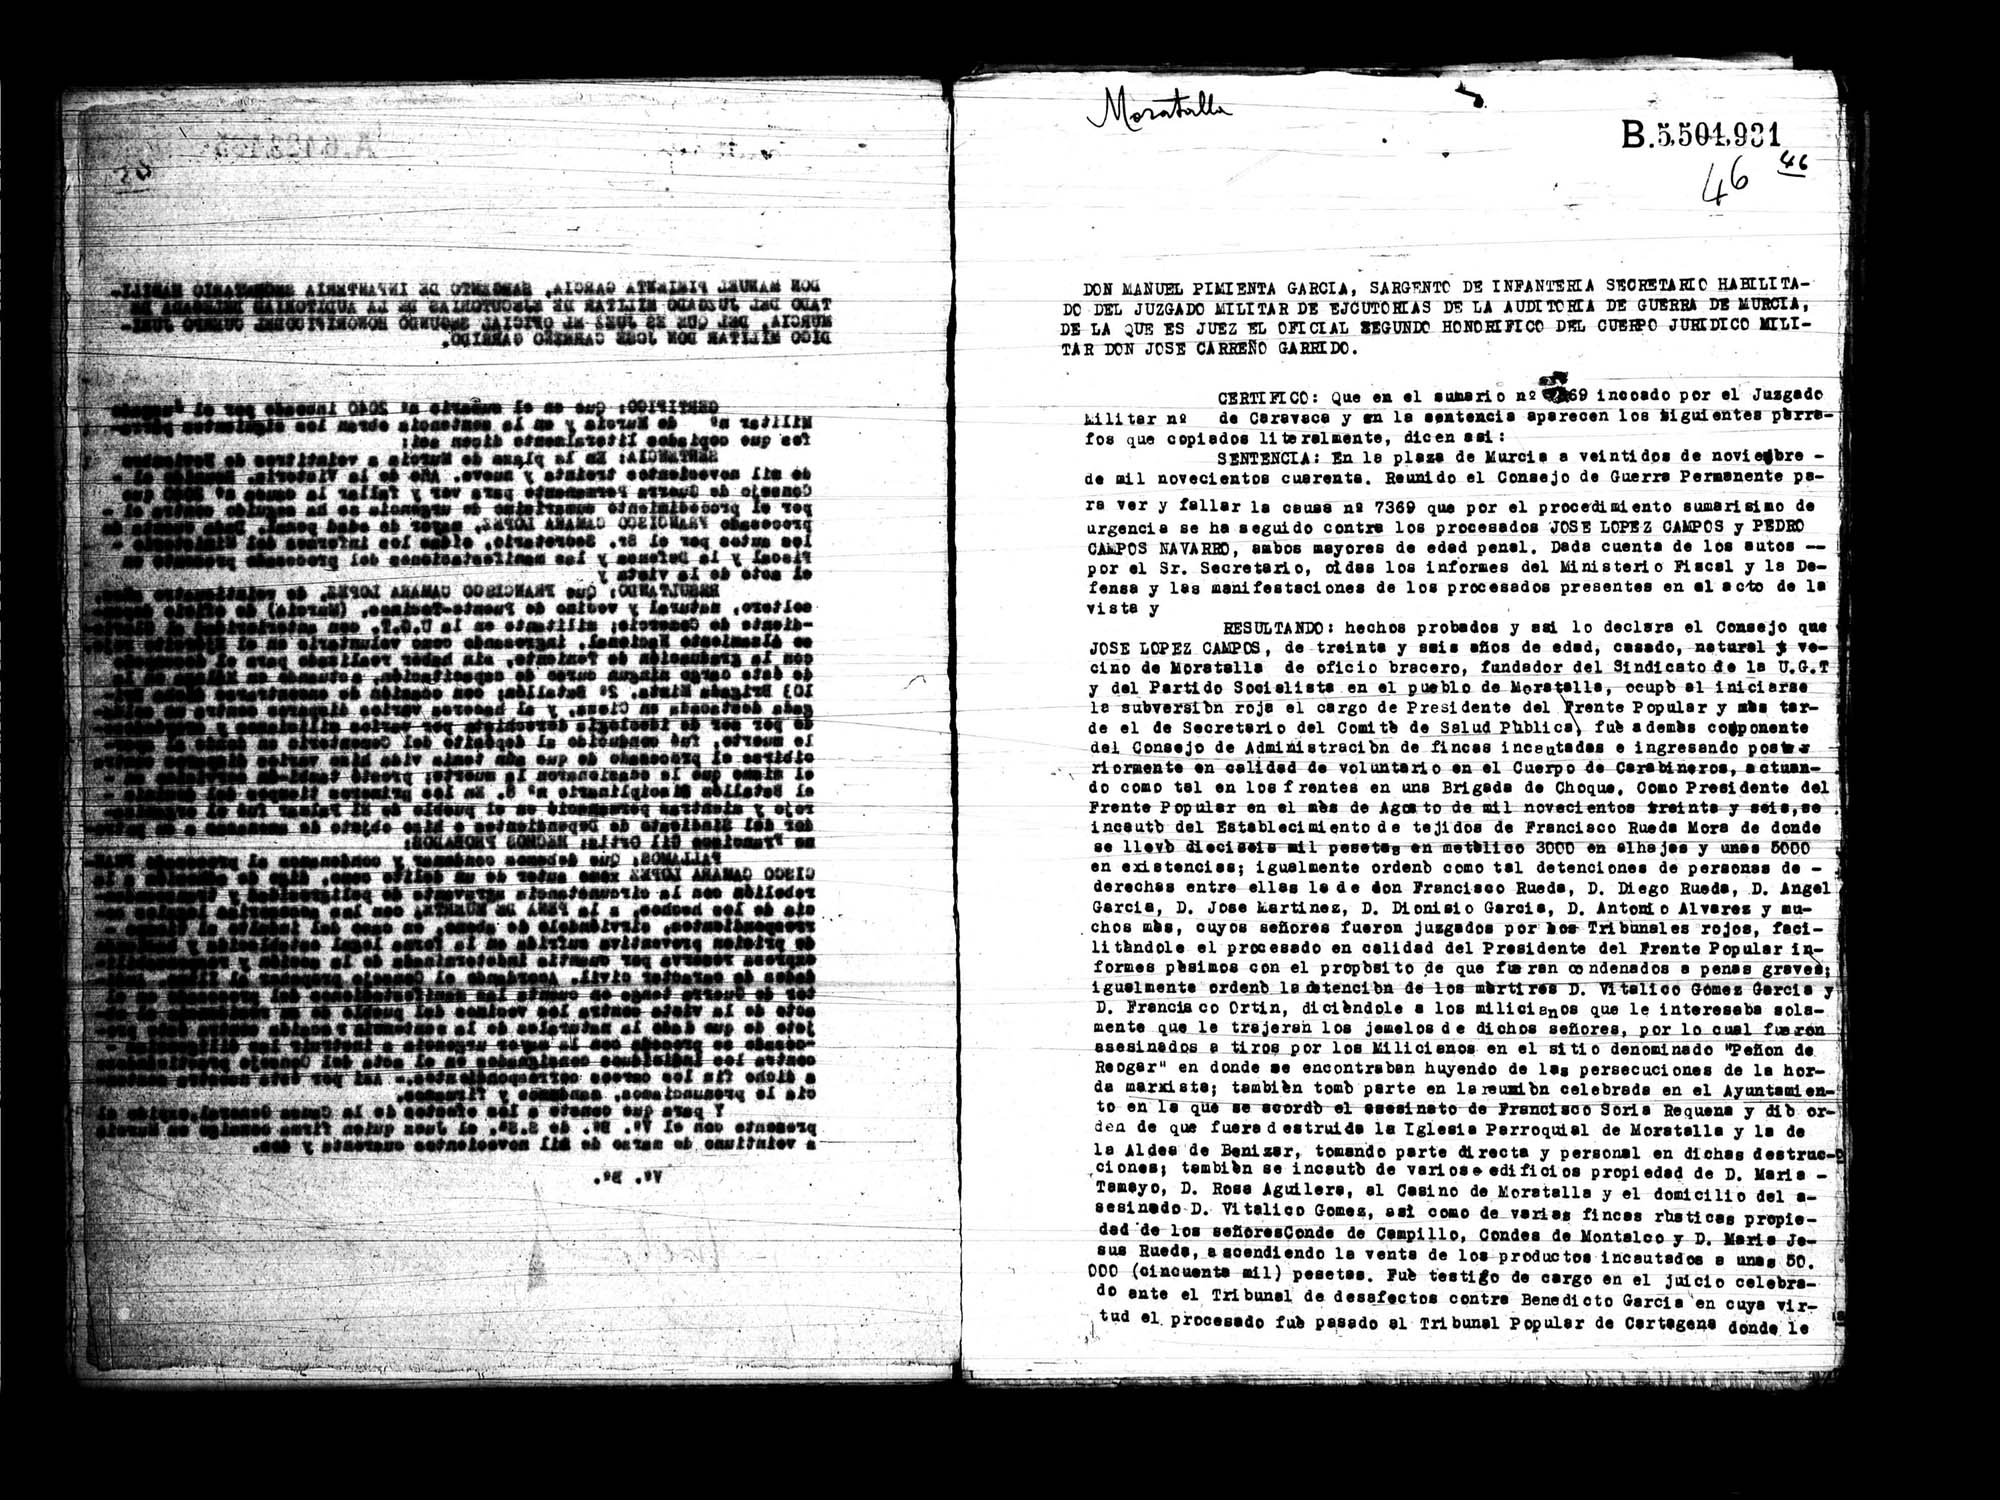 Certificado de la sentencia pronunciada contra José López Campos, causa 7369, el 22 de noviembre de 1940 en Murcia.